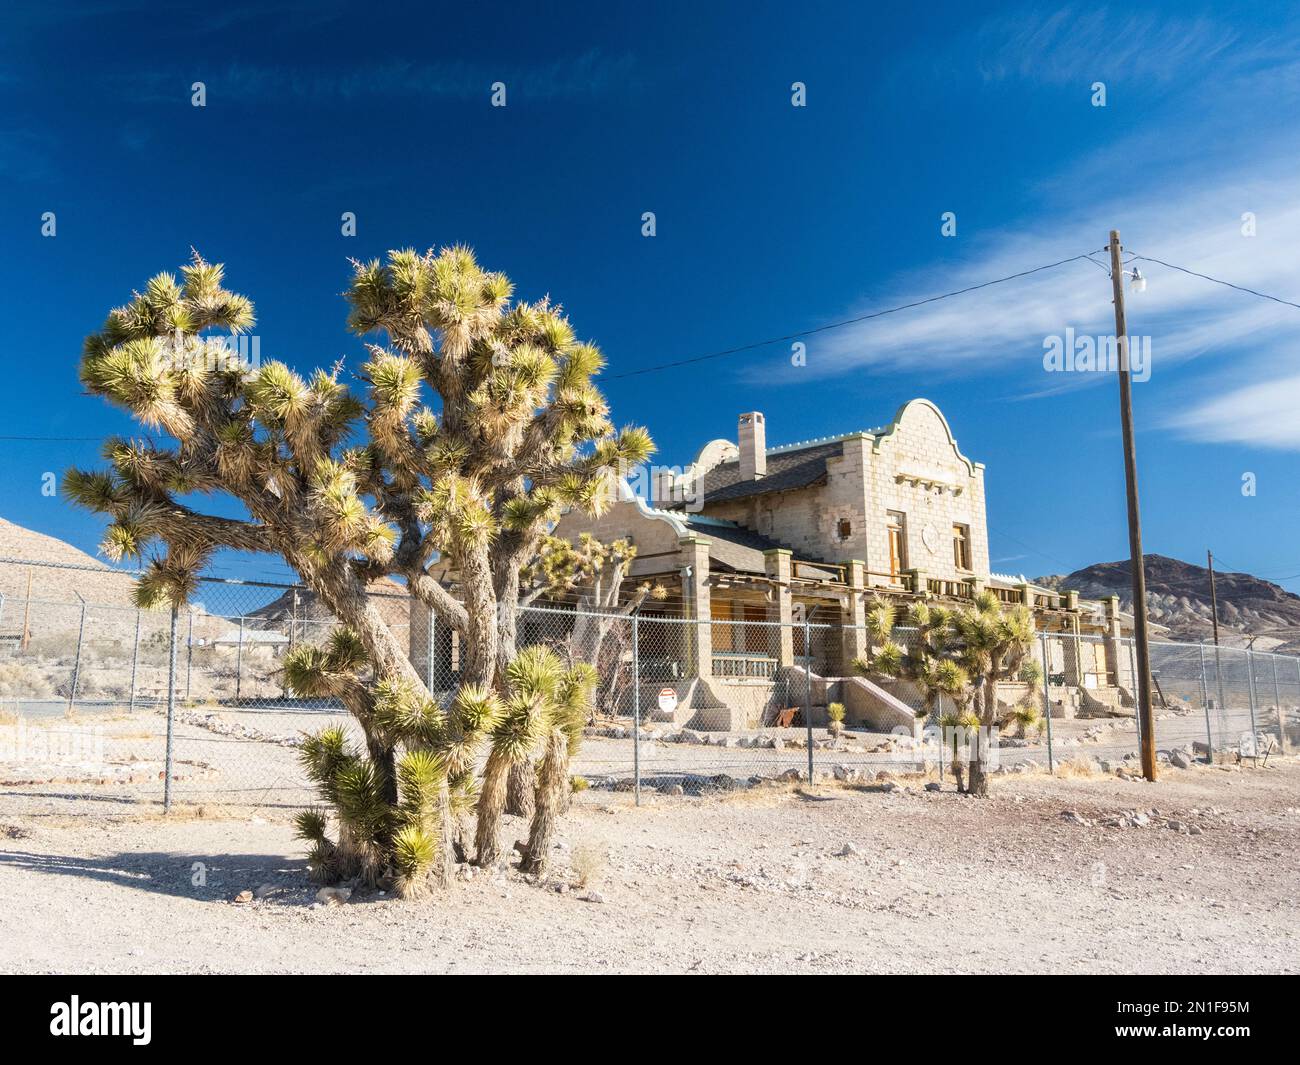 Dépôt de train abandonné à Rhyolite, une ville fantôme dans le comté de Nye, près du parc national de la Vallée de la mort, Nevada, États-Unis d'Amérique, Amérique du Nord Banque D'Images